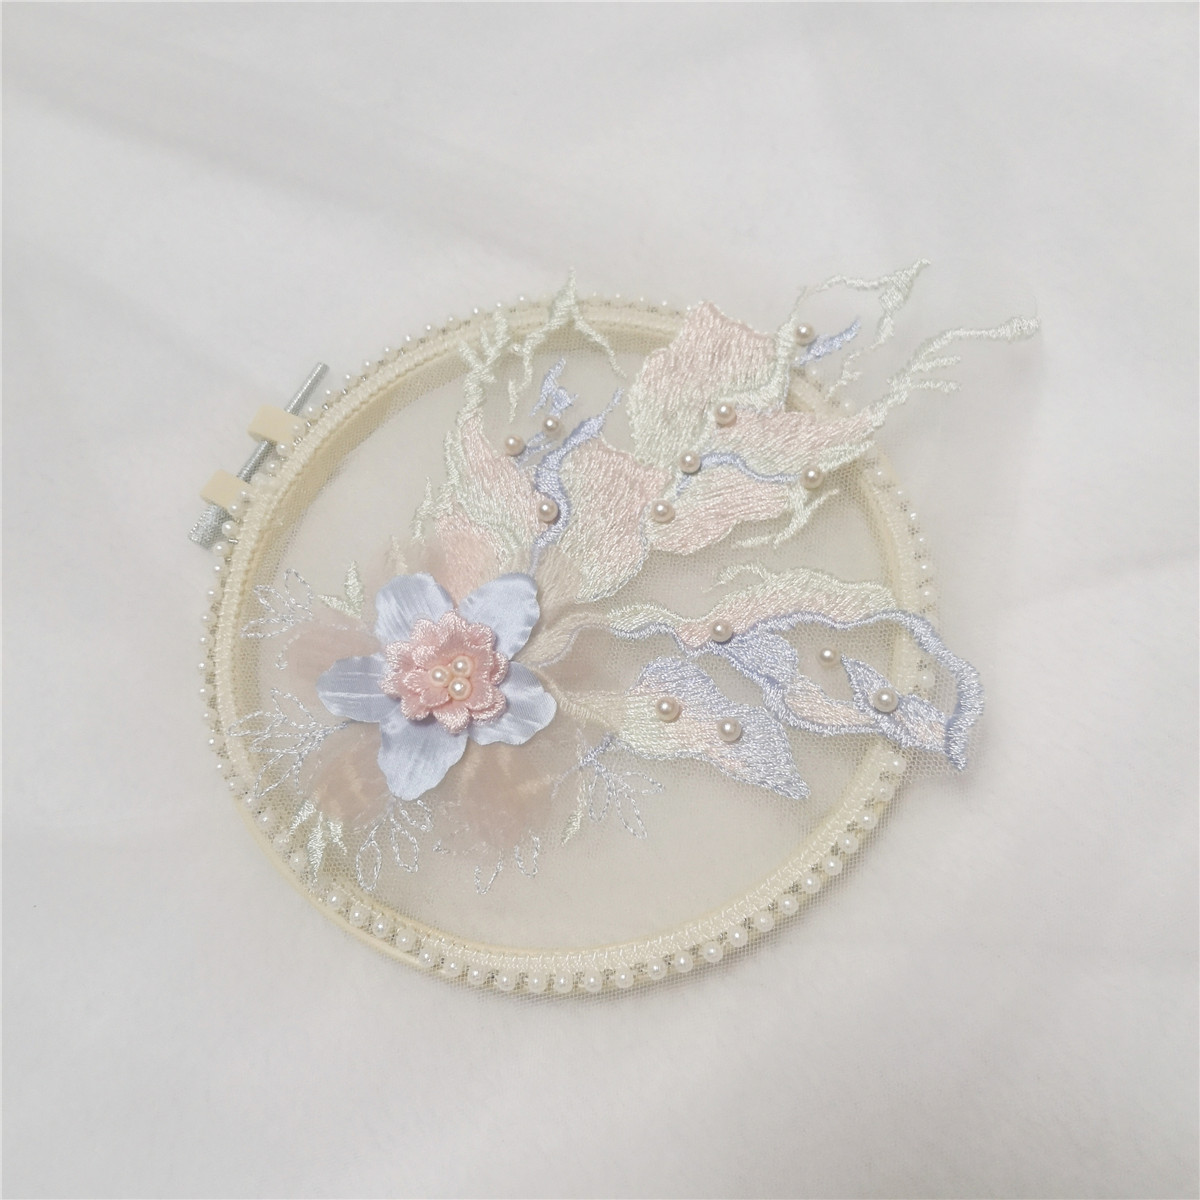 立体珍珠粉蓝色蕾丝花边辅料手工设计刺绣花朵服装装饰品布贴